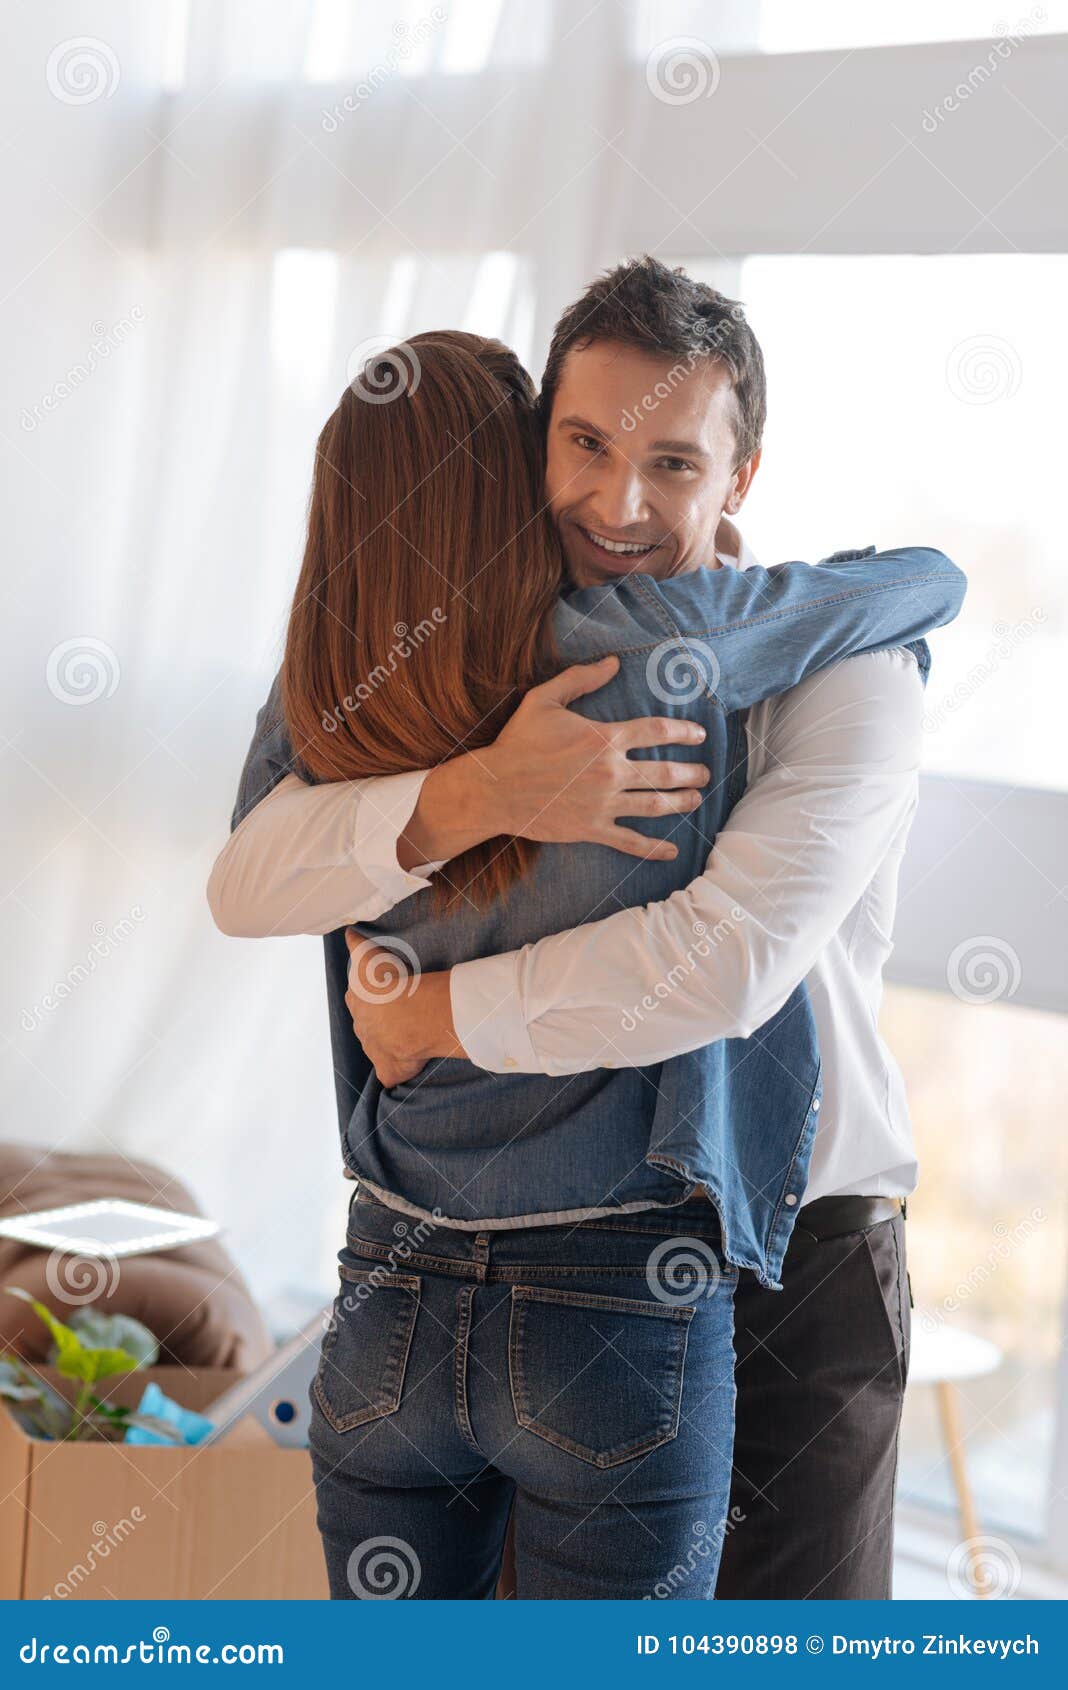 中年情侣相拥图片,老公抱着老婆幸福图片 - 伤感说说吧